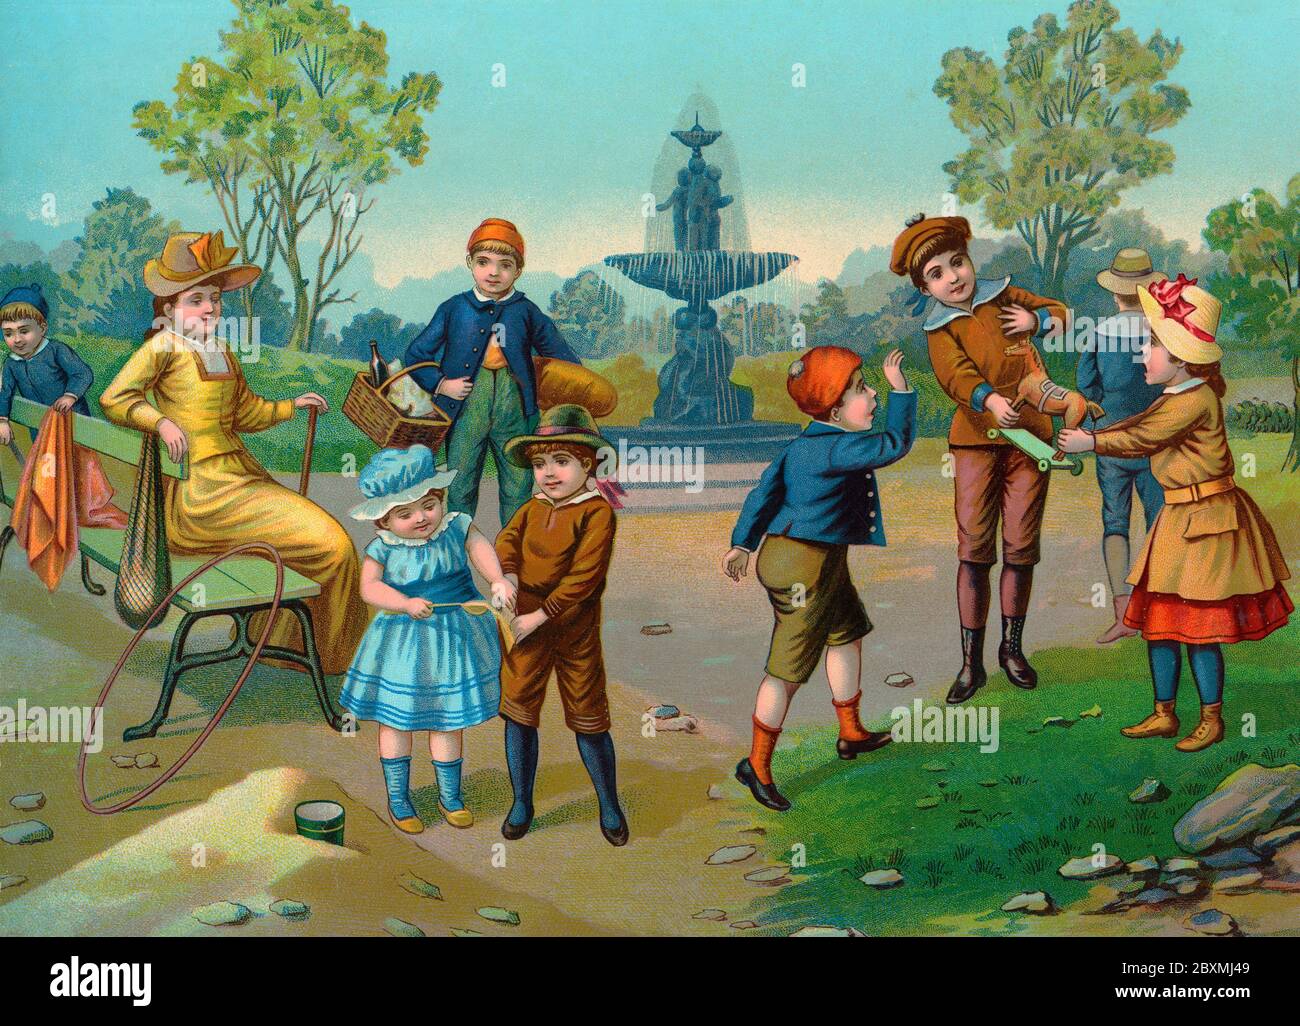 Alte Abbildung. Auf dieser britischen Illustration des 19. Jahrhunderts spielen Kinder draußen mit typischen Spielsachen der Zeit. Eine fröhliche Sommerszene. Stockfoto